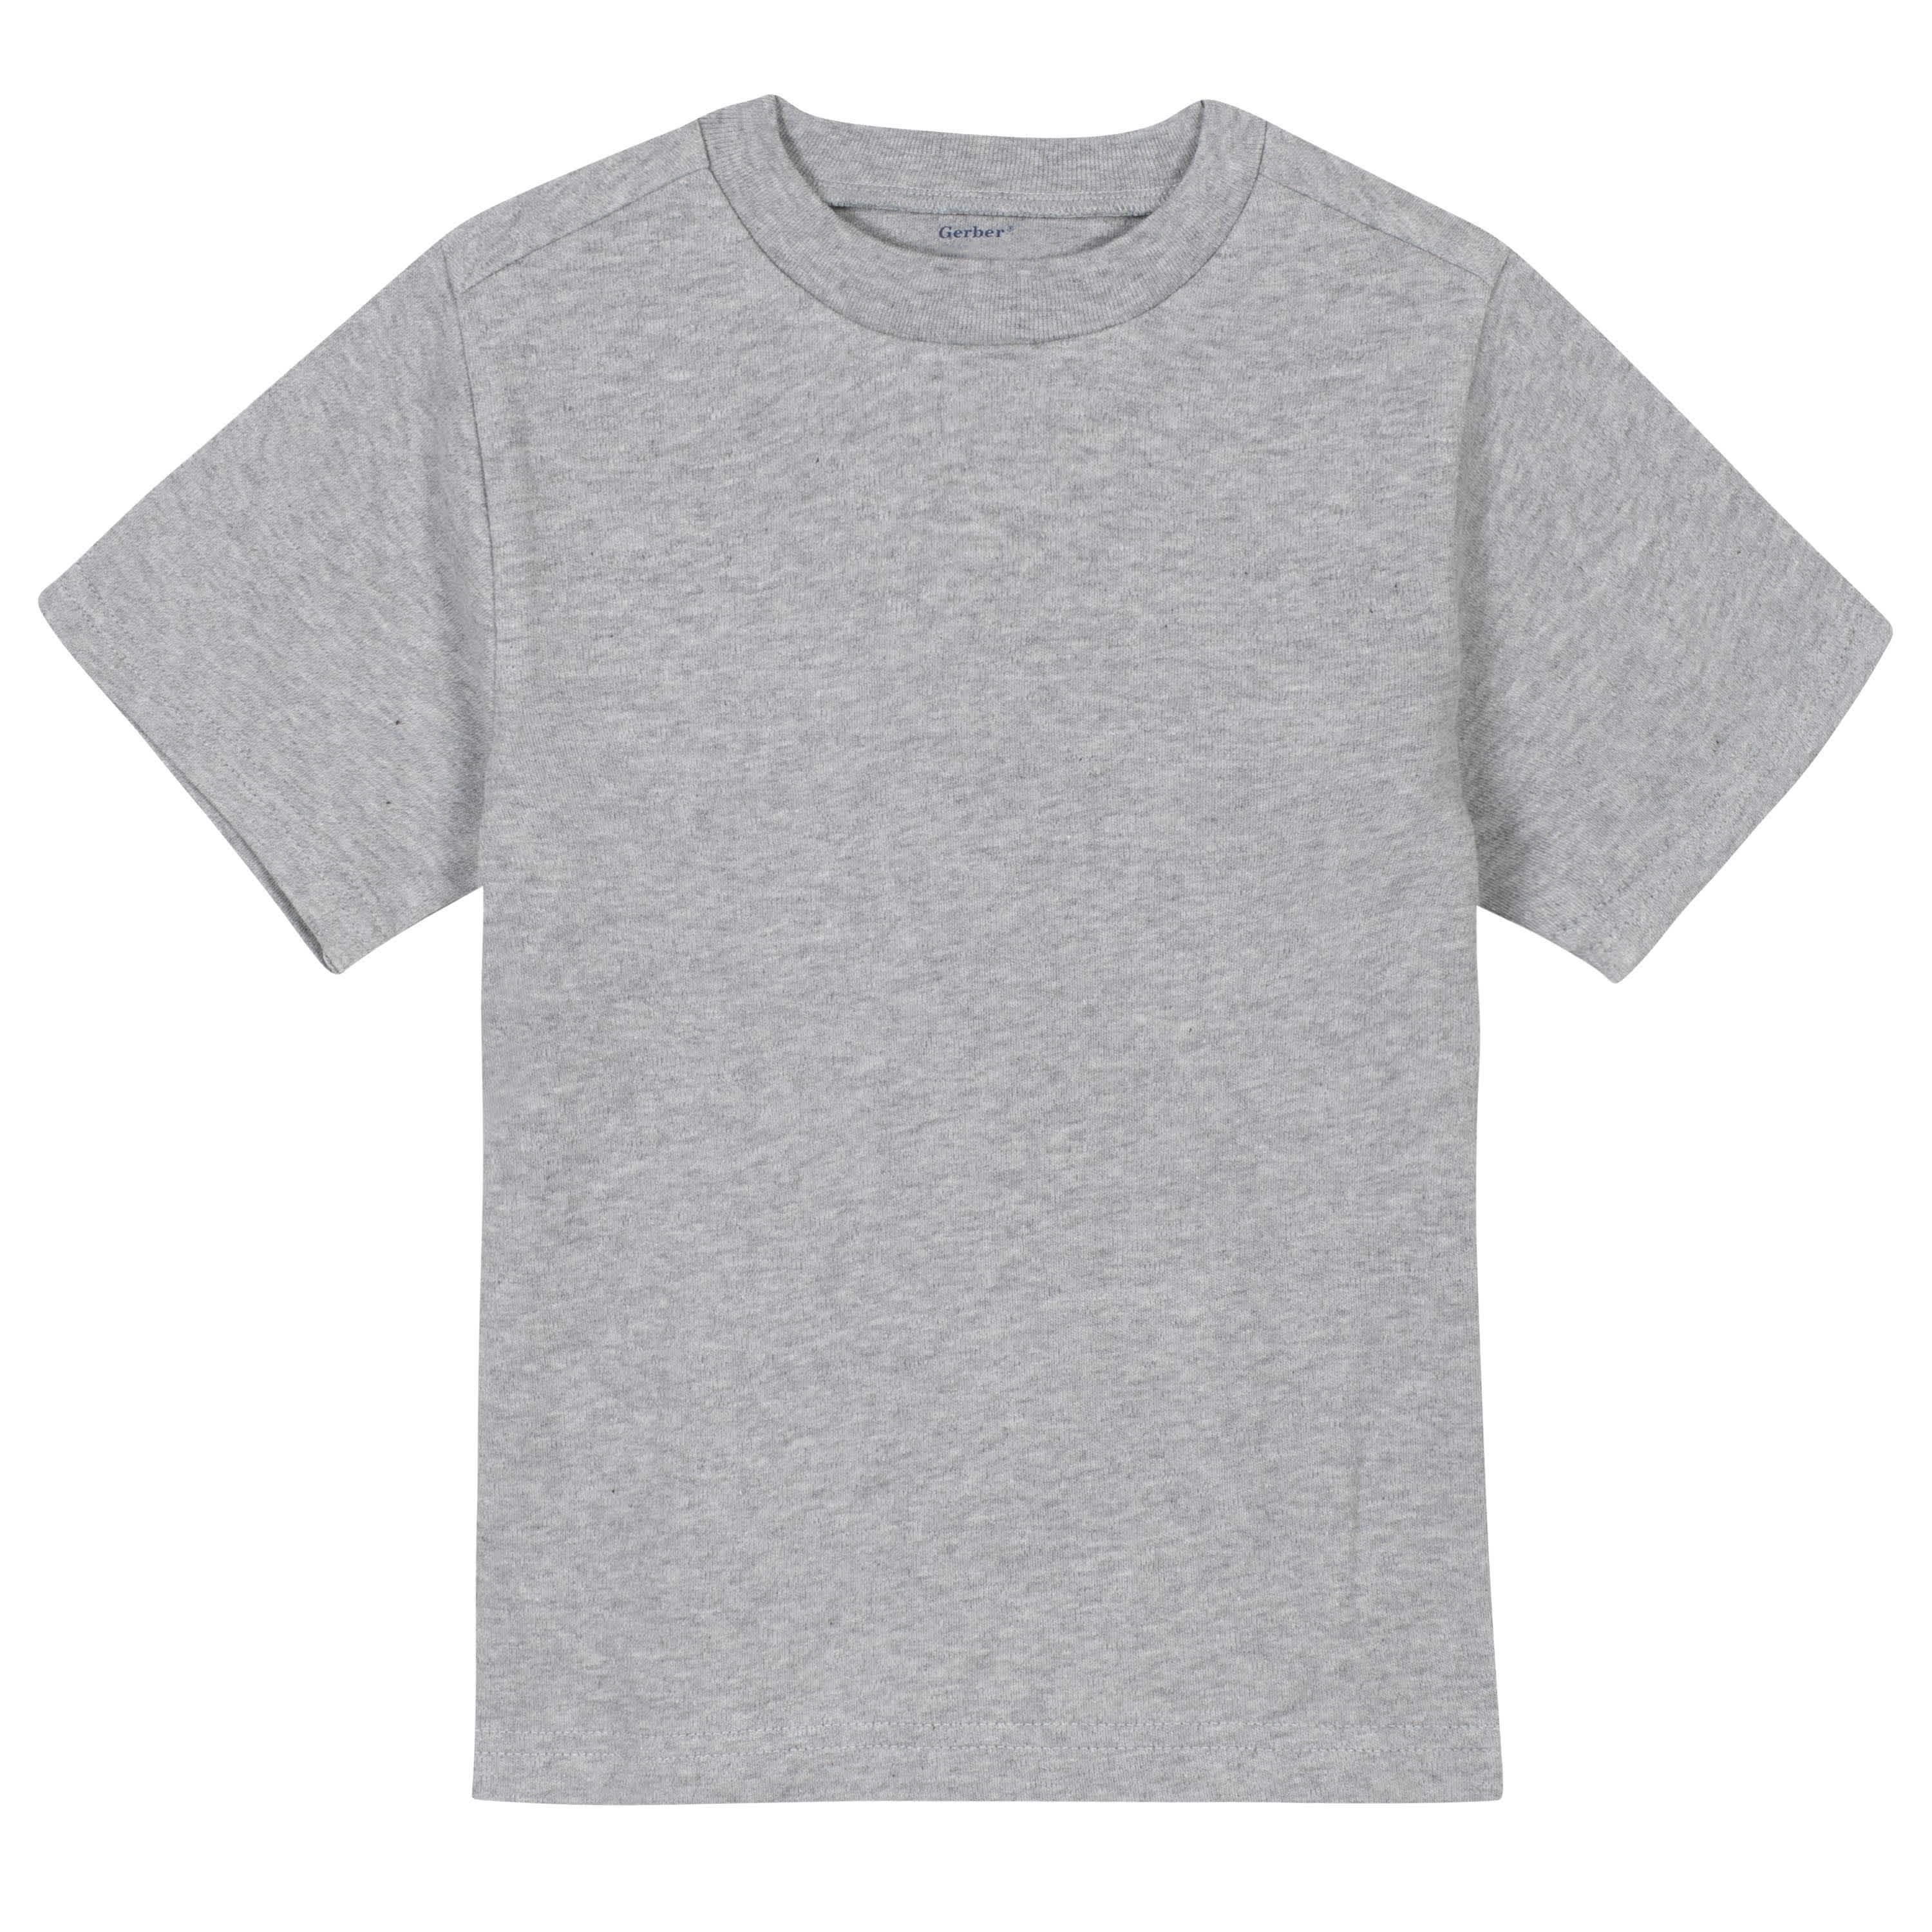 Gerber® Premium Short Sleeve Gray Shirt Childrenswear – Gerber Tee Light 